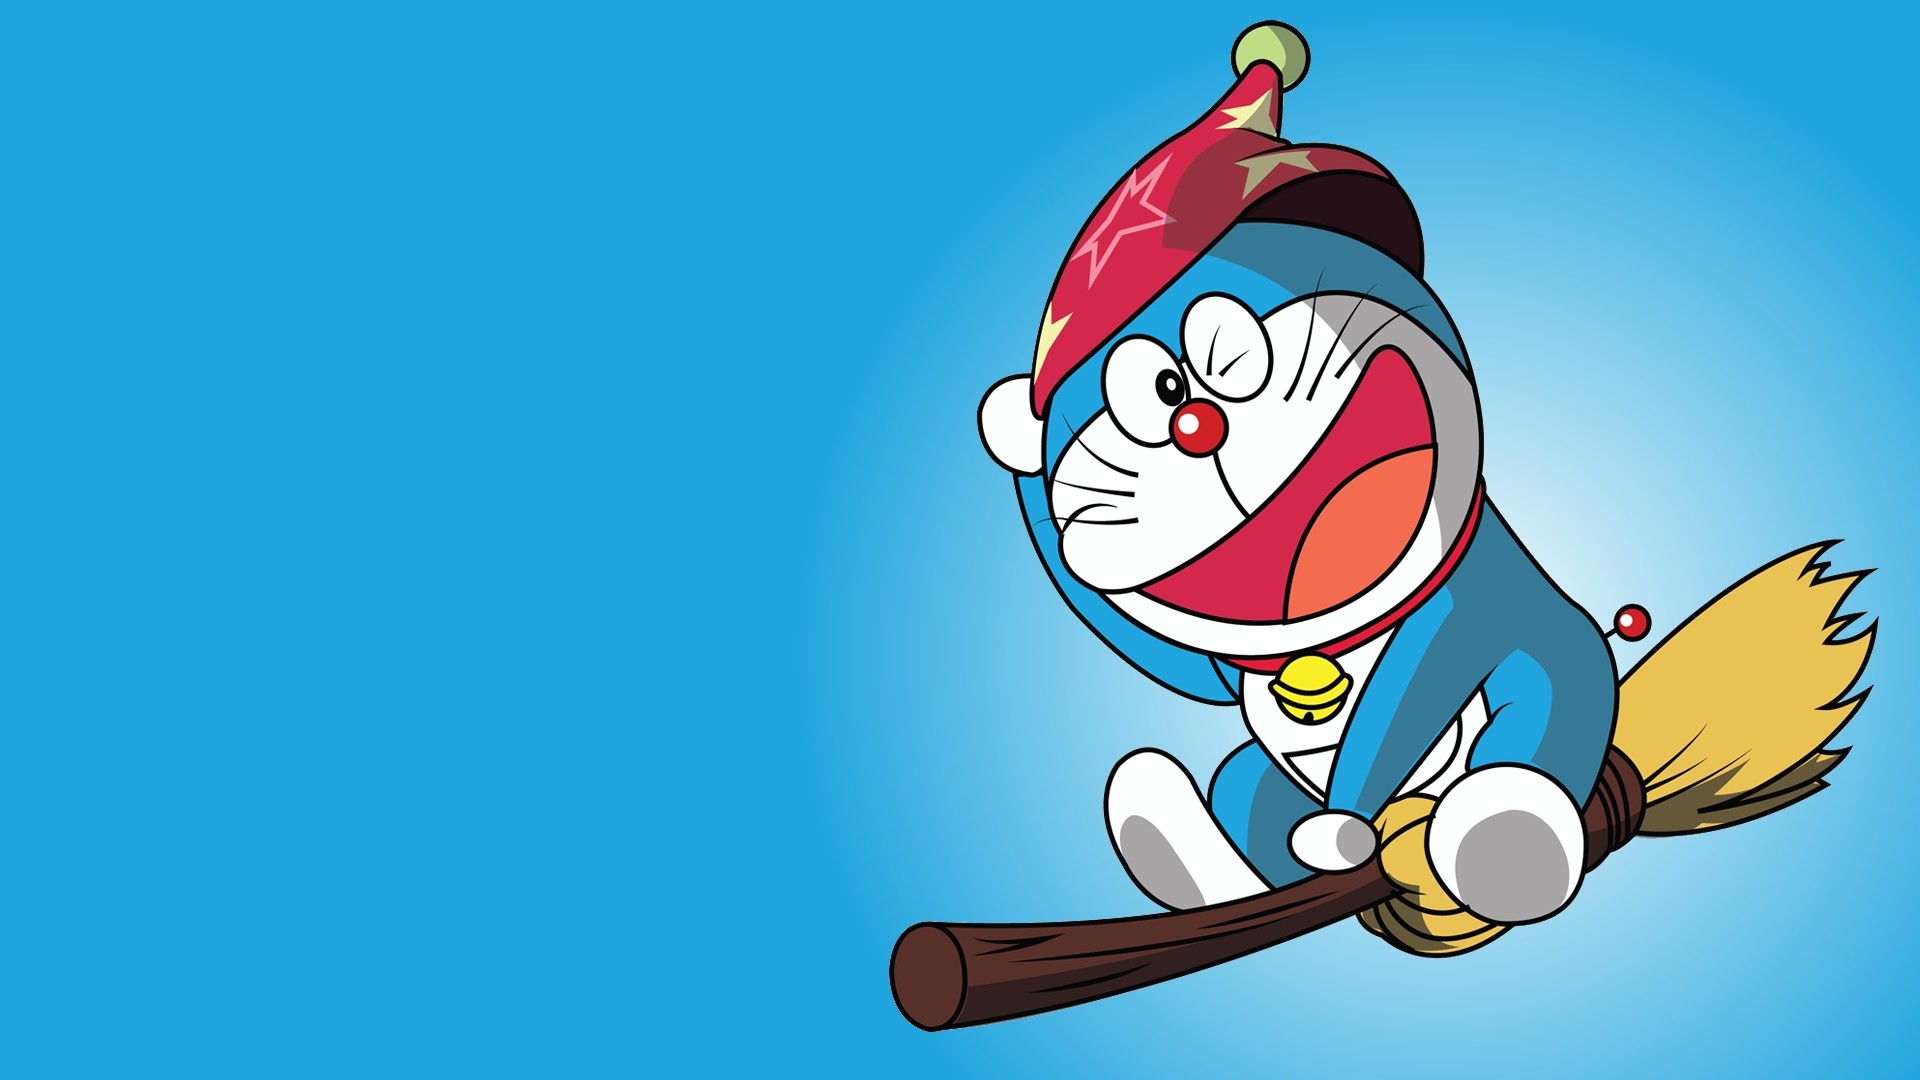 Thiết kế màn hình nền với hình ảnh Doraemon thật dễ dàng. Hãy để cho tâm trí được thư giãn và thỏa mãn với những hình nền đẹp và đáng yêu nhất.